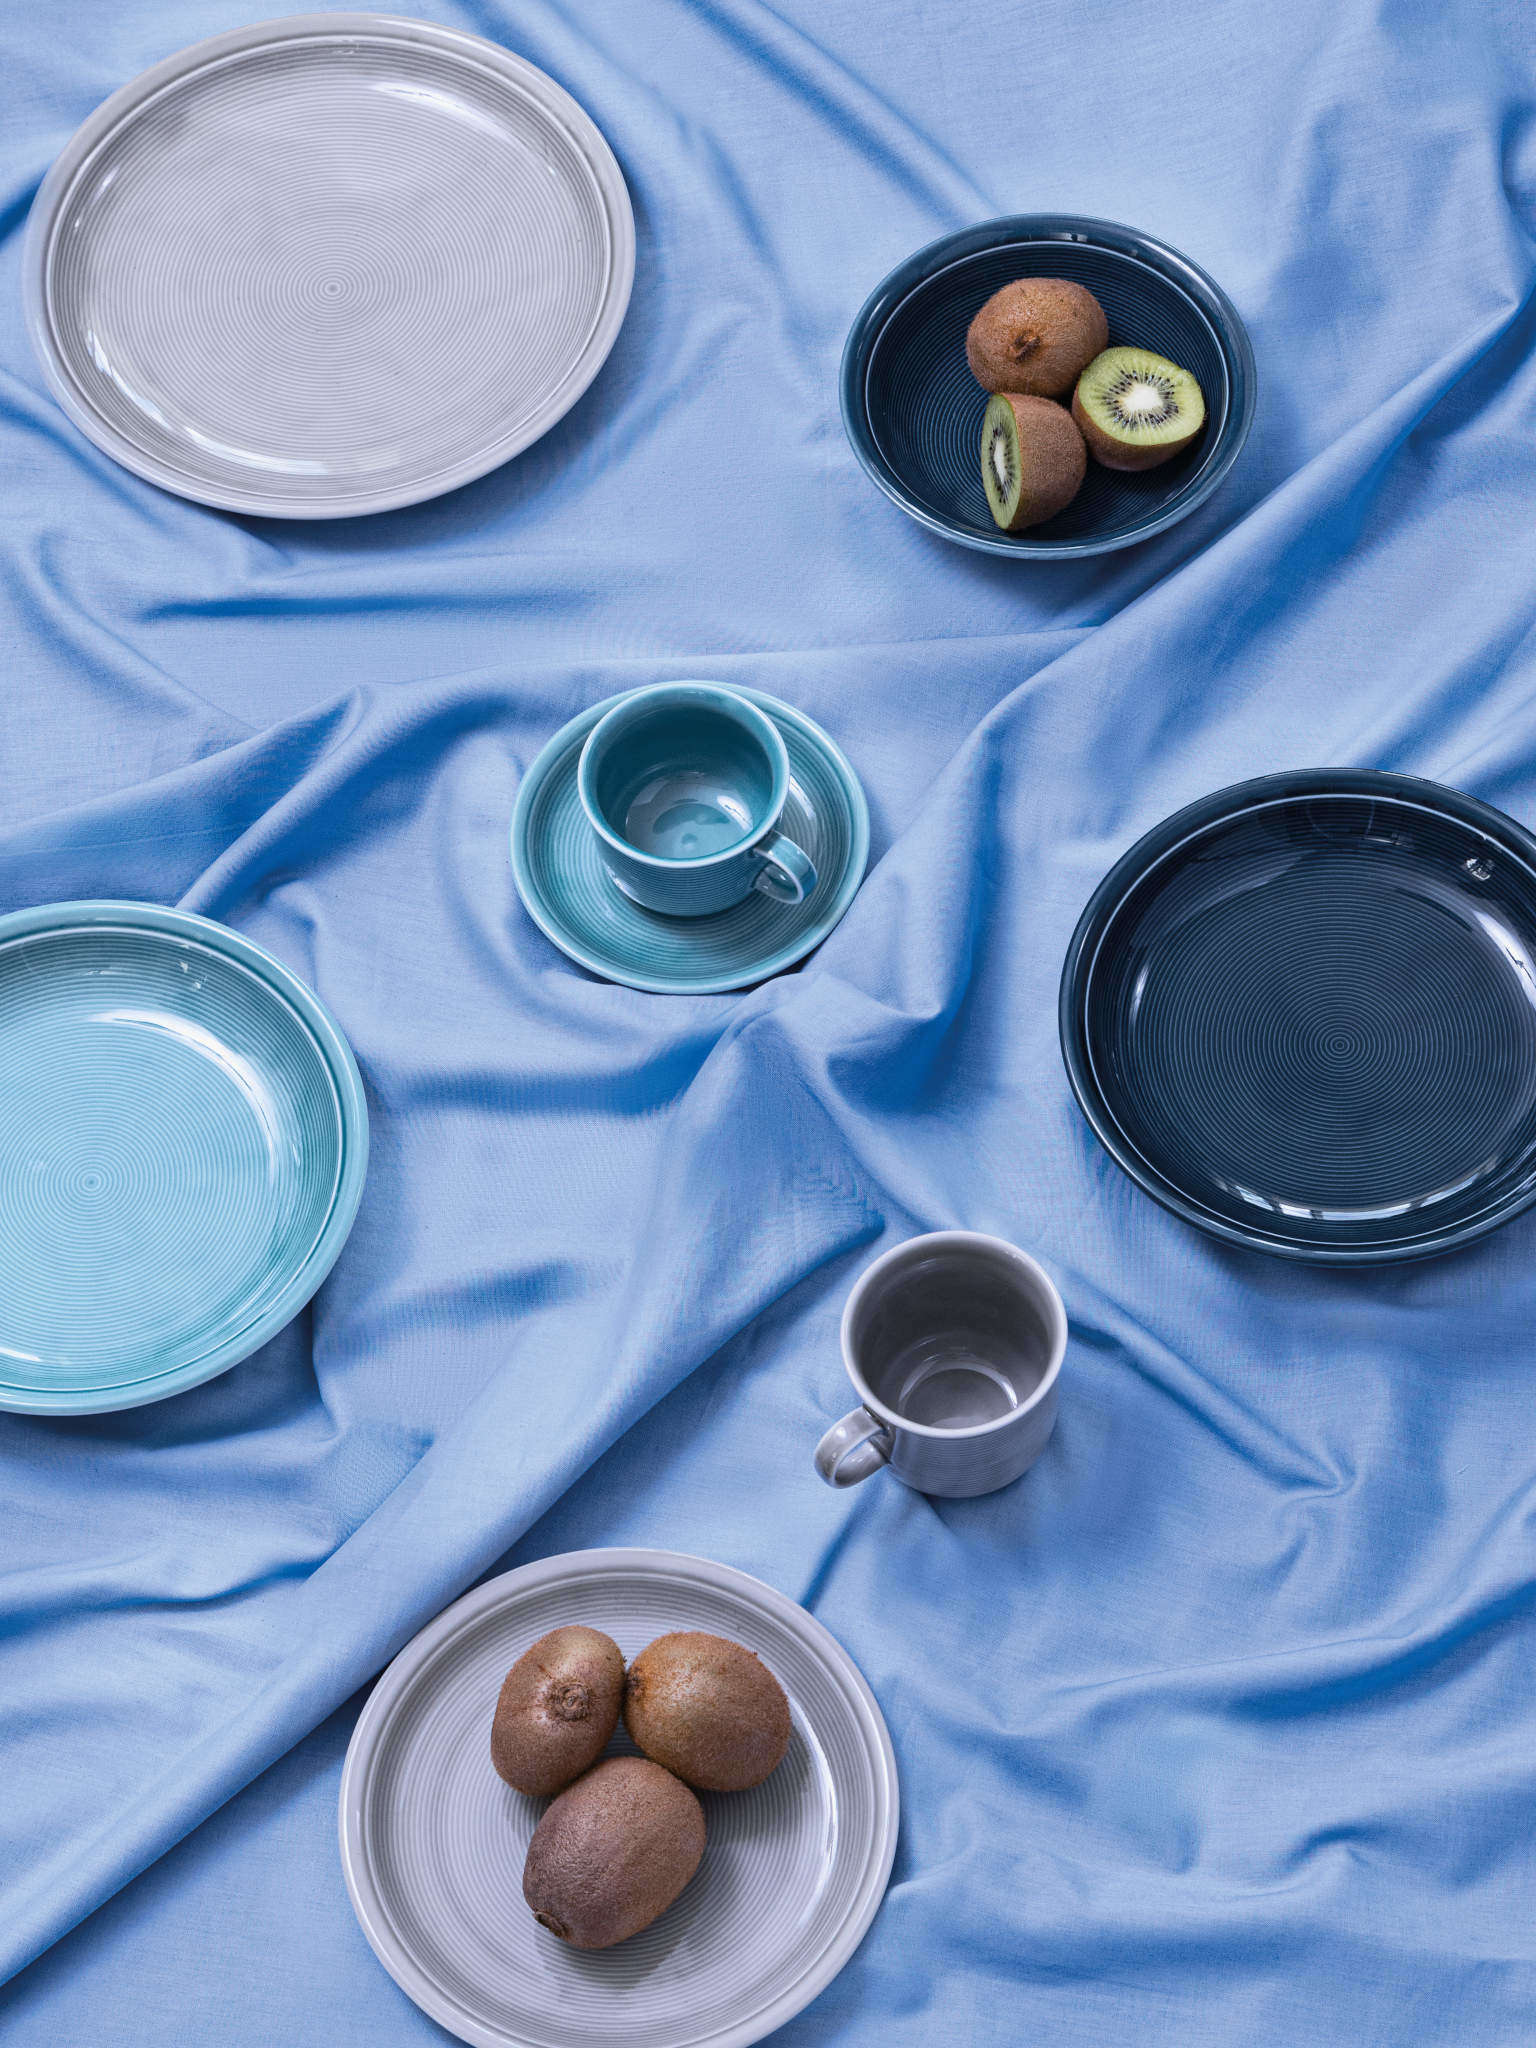 Thomas Trend Porzellanartikel mit Kiwis auf blauer Tischdecke 